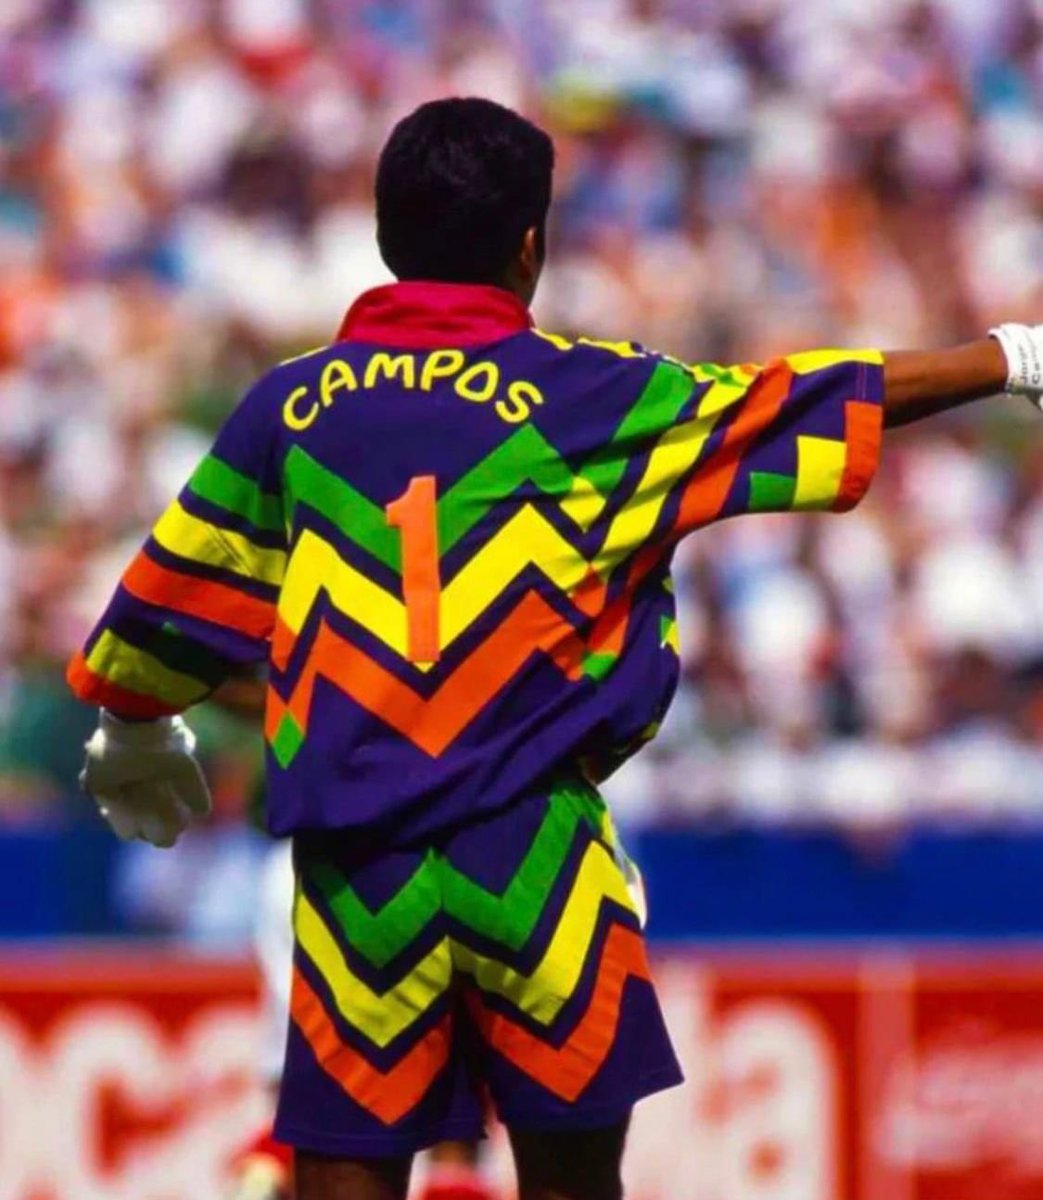 Silloin, kun pukeudutaan, pukeudutaan kuin Jorge Campos MM-94!